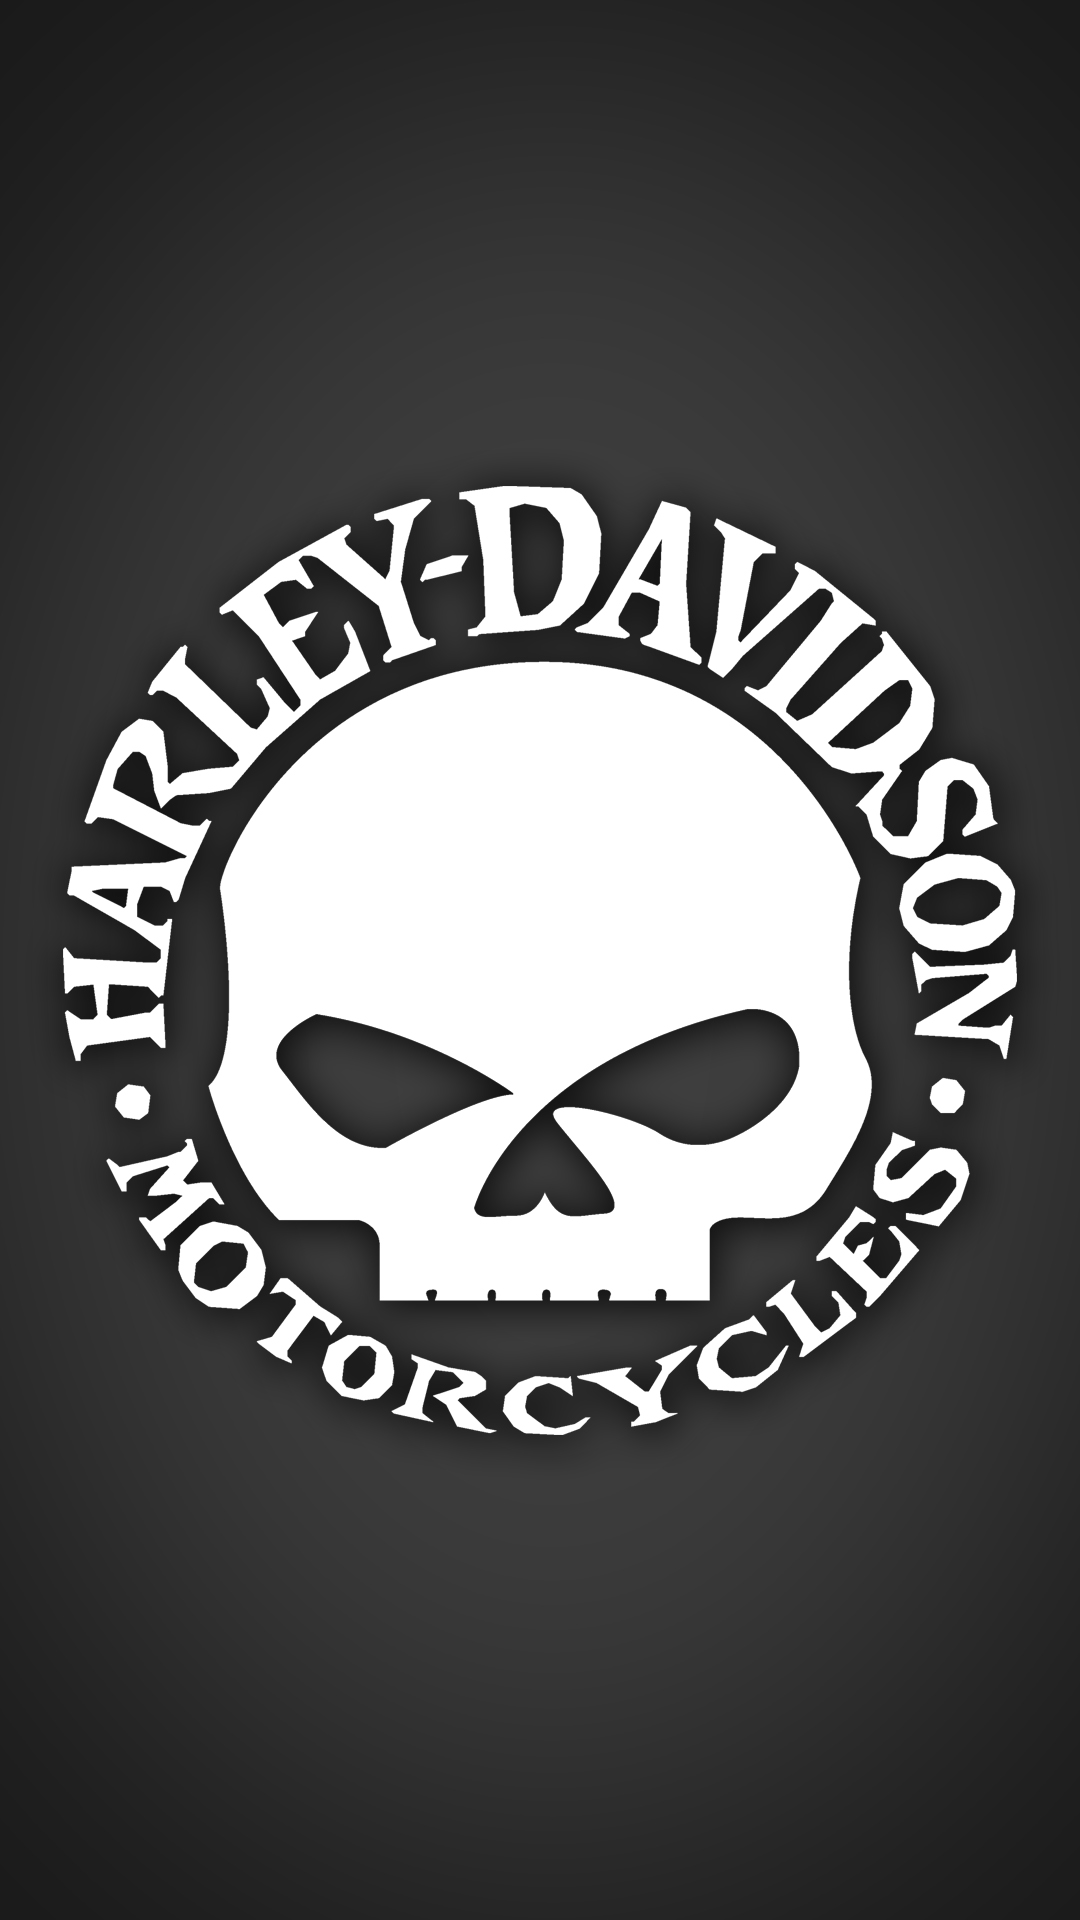 Harley davidson skull wallpaper